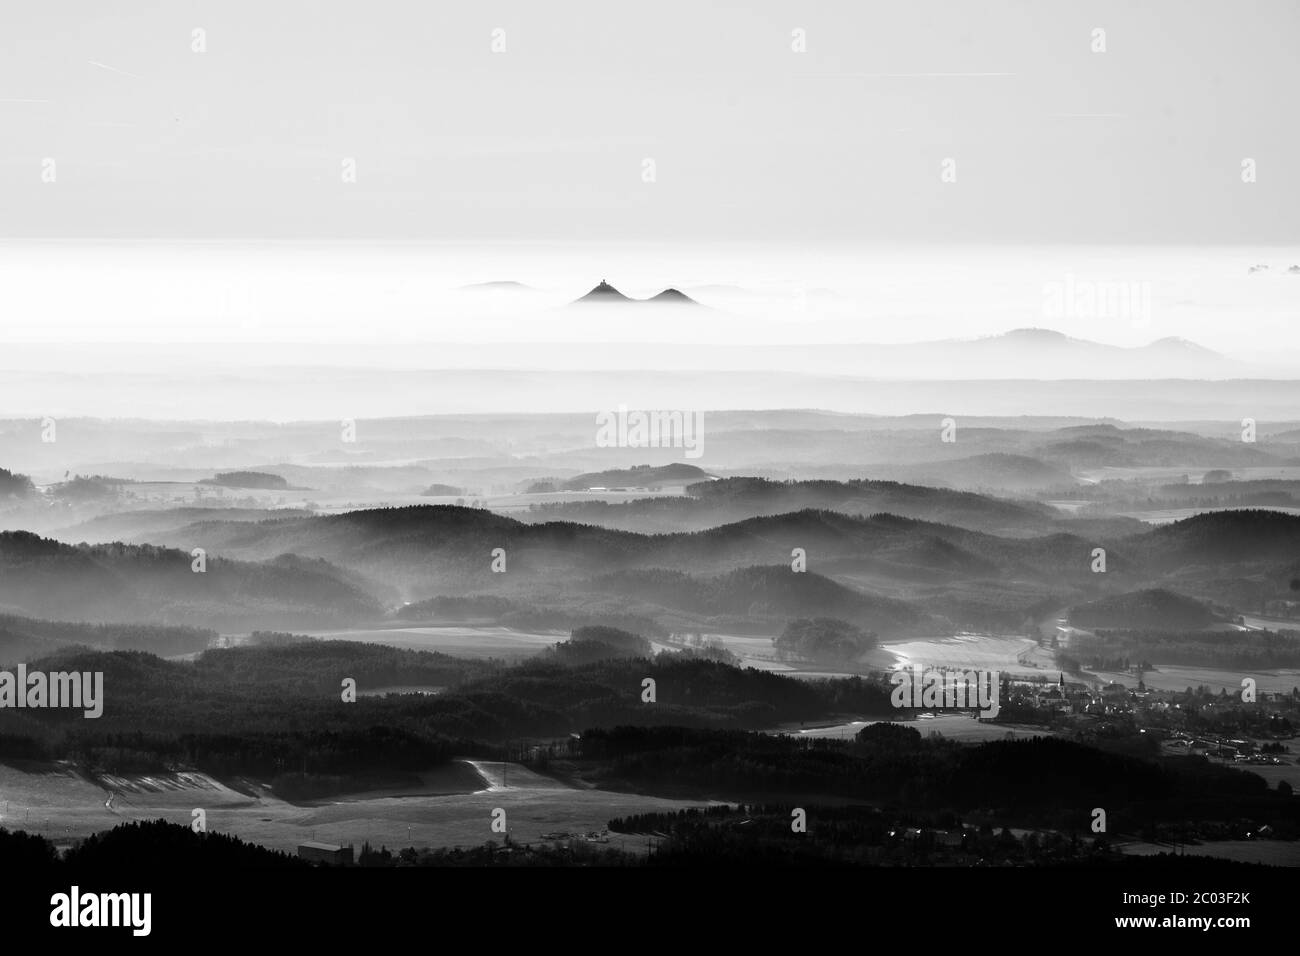 Bezdez gemelle montagne che si innalzano dalla nebbia. Inversione della temperatura meteo, Repubblica Ceca. Immagine in bianco e nero. Foto Stock